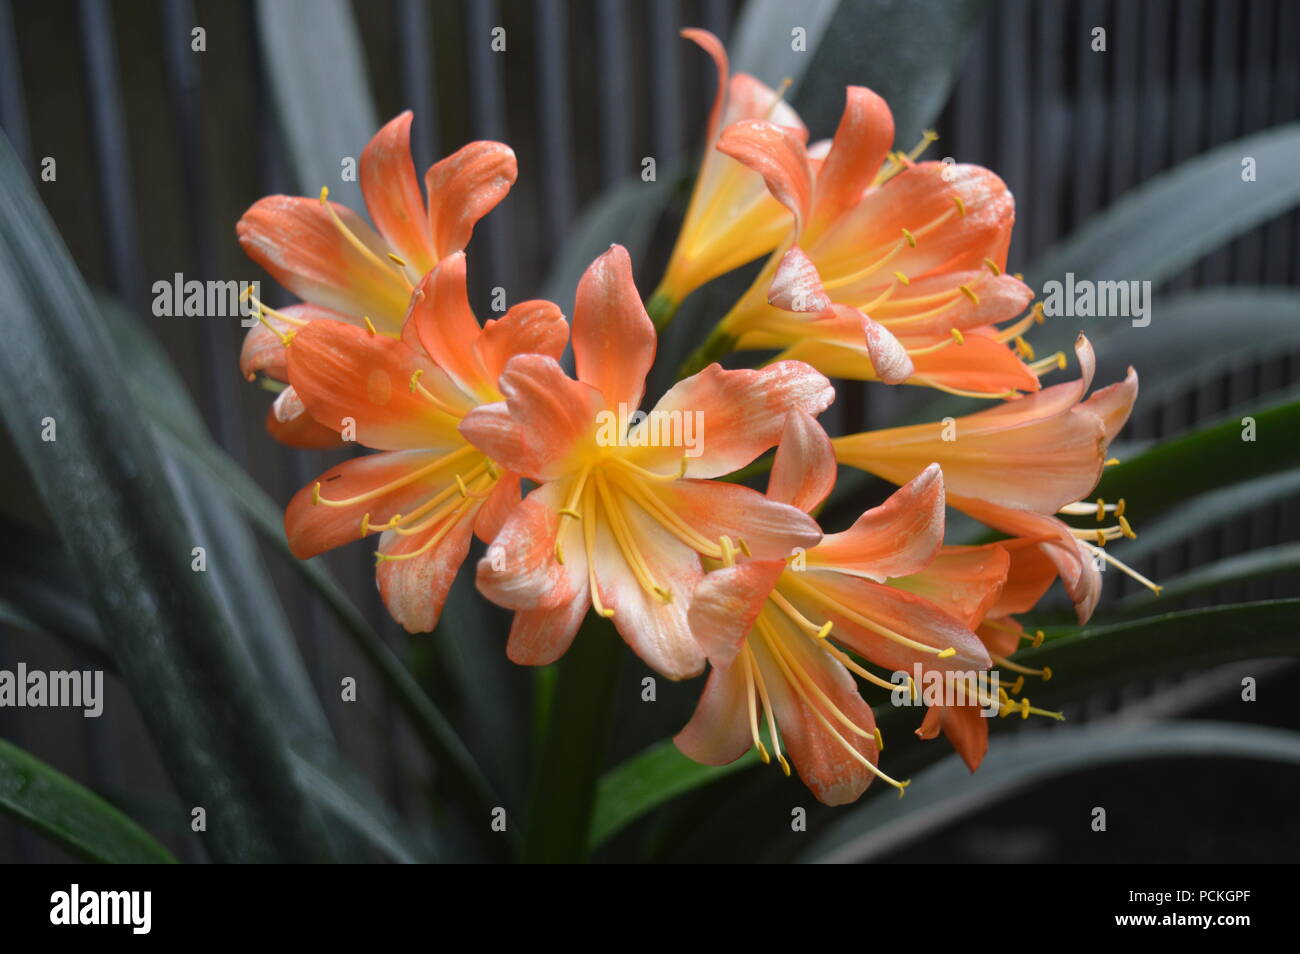 Clivia miniata lily Stock Photo